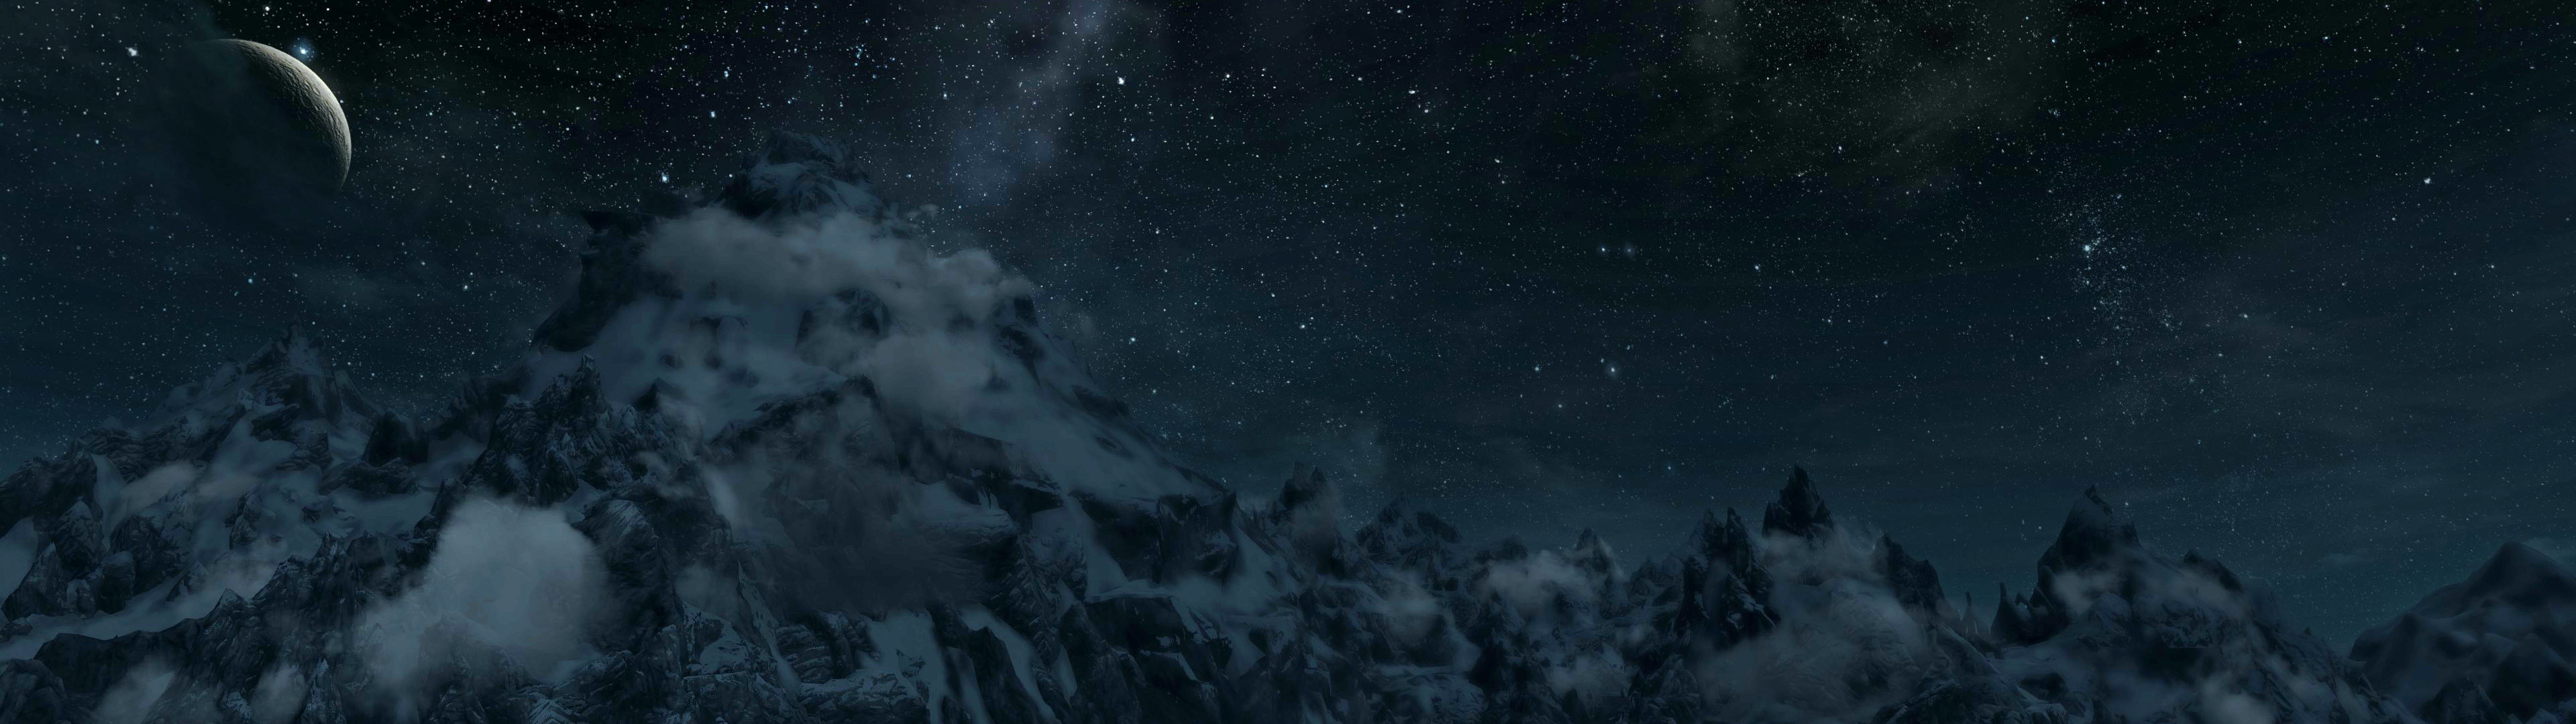 3840x1080 Skyrim mountain range panorama (dual screen wallpaper I made) []  ...